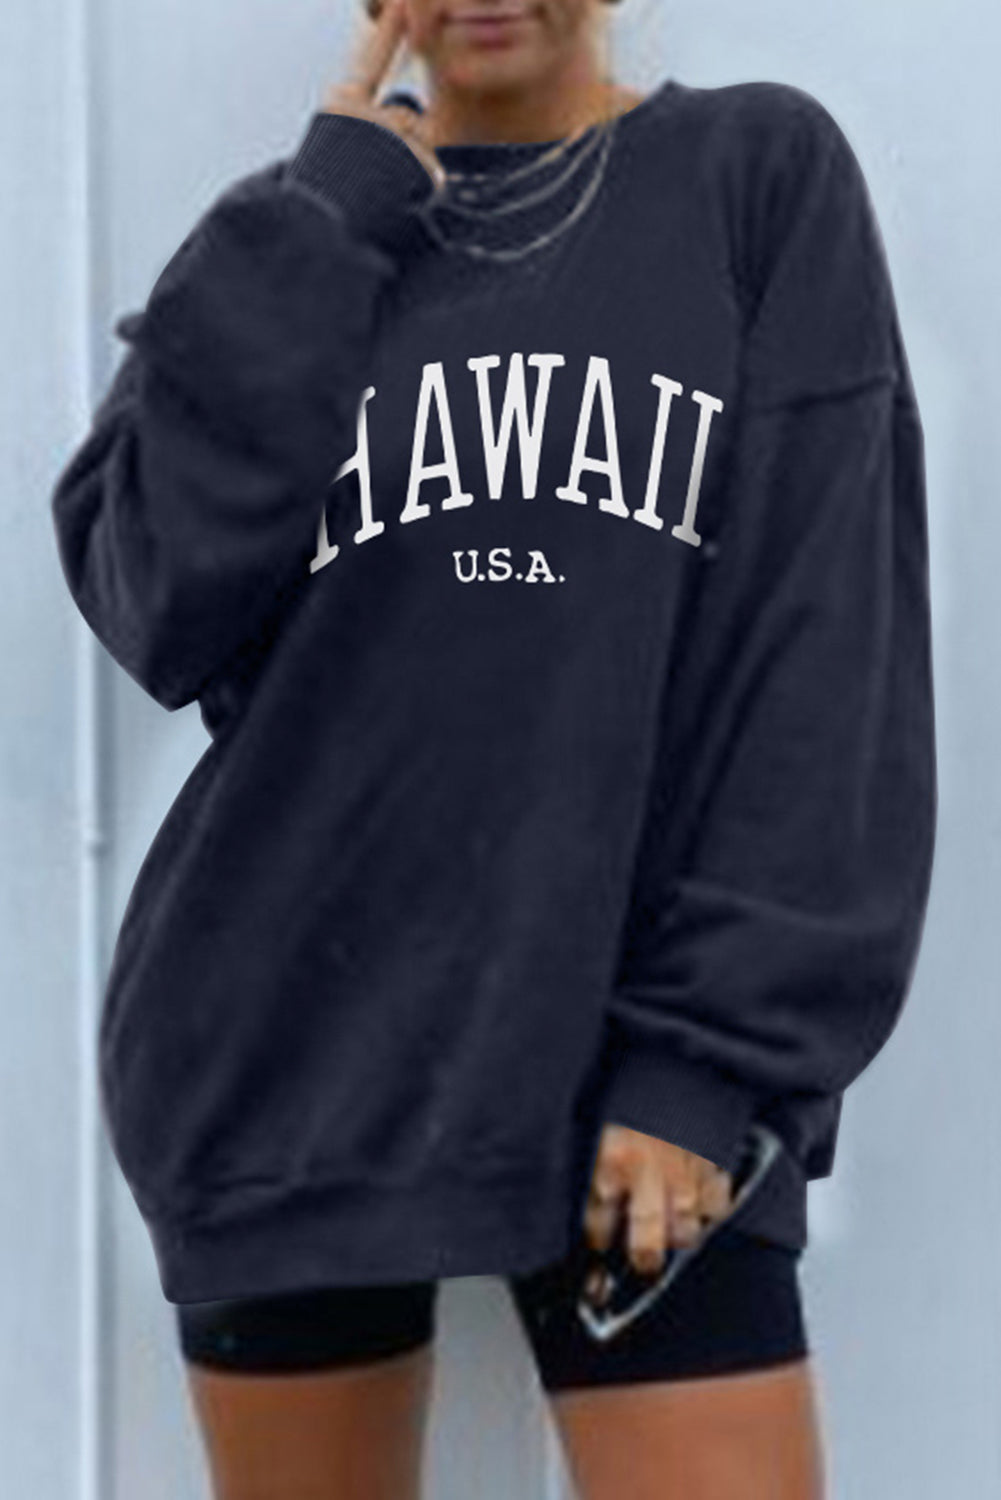 Hawaii oversized graphic sweatshirt